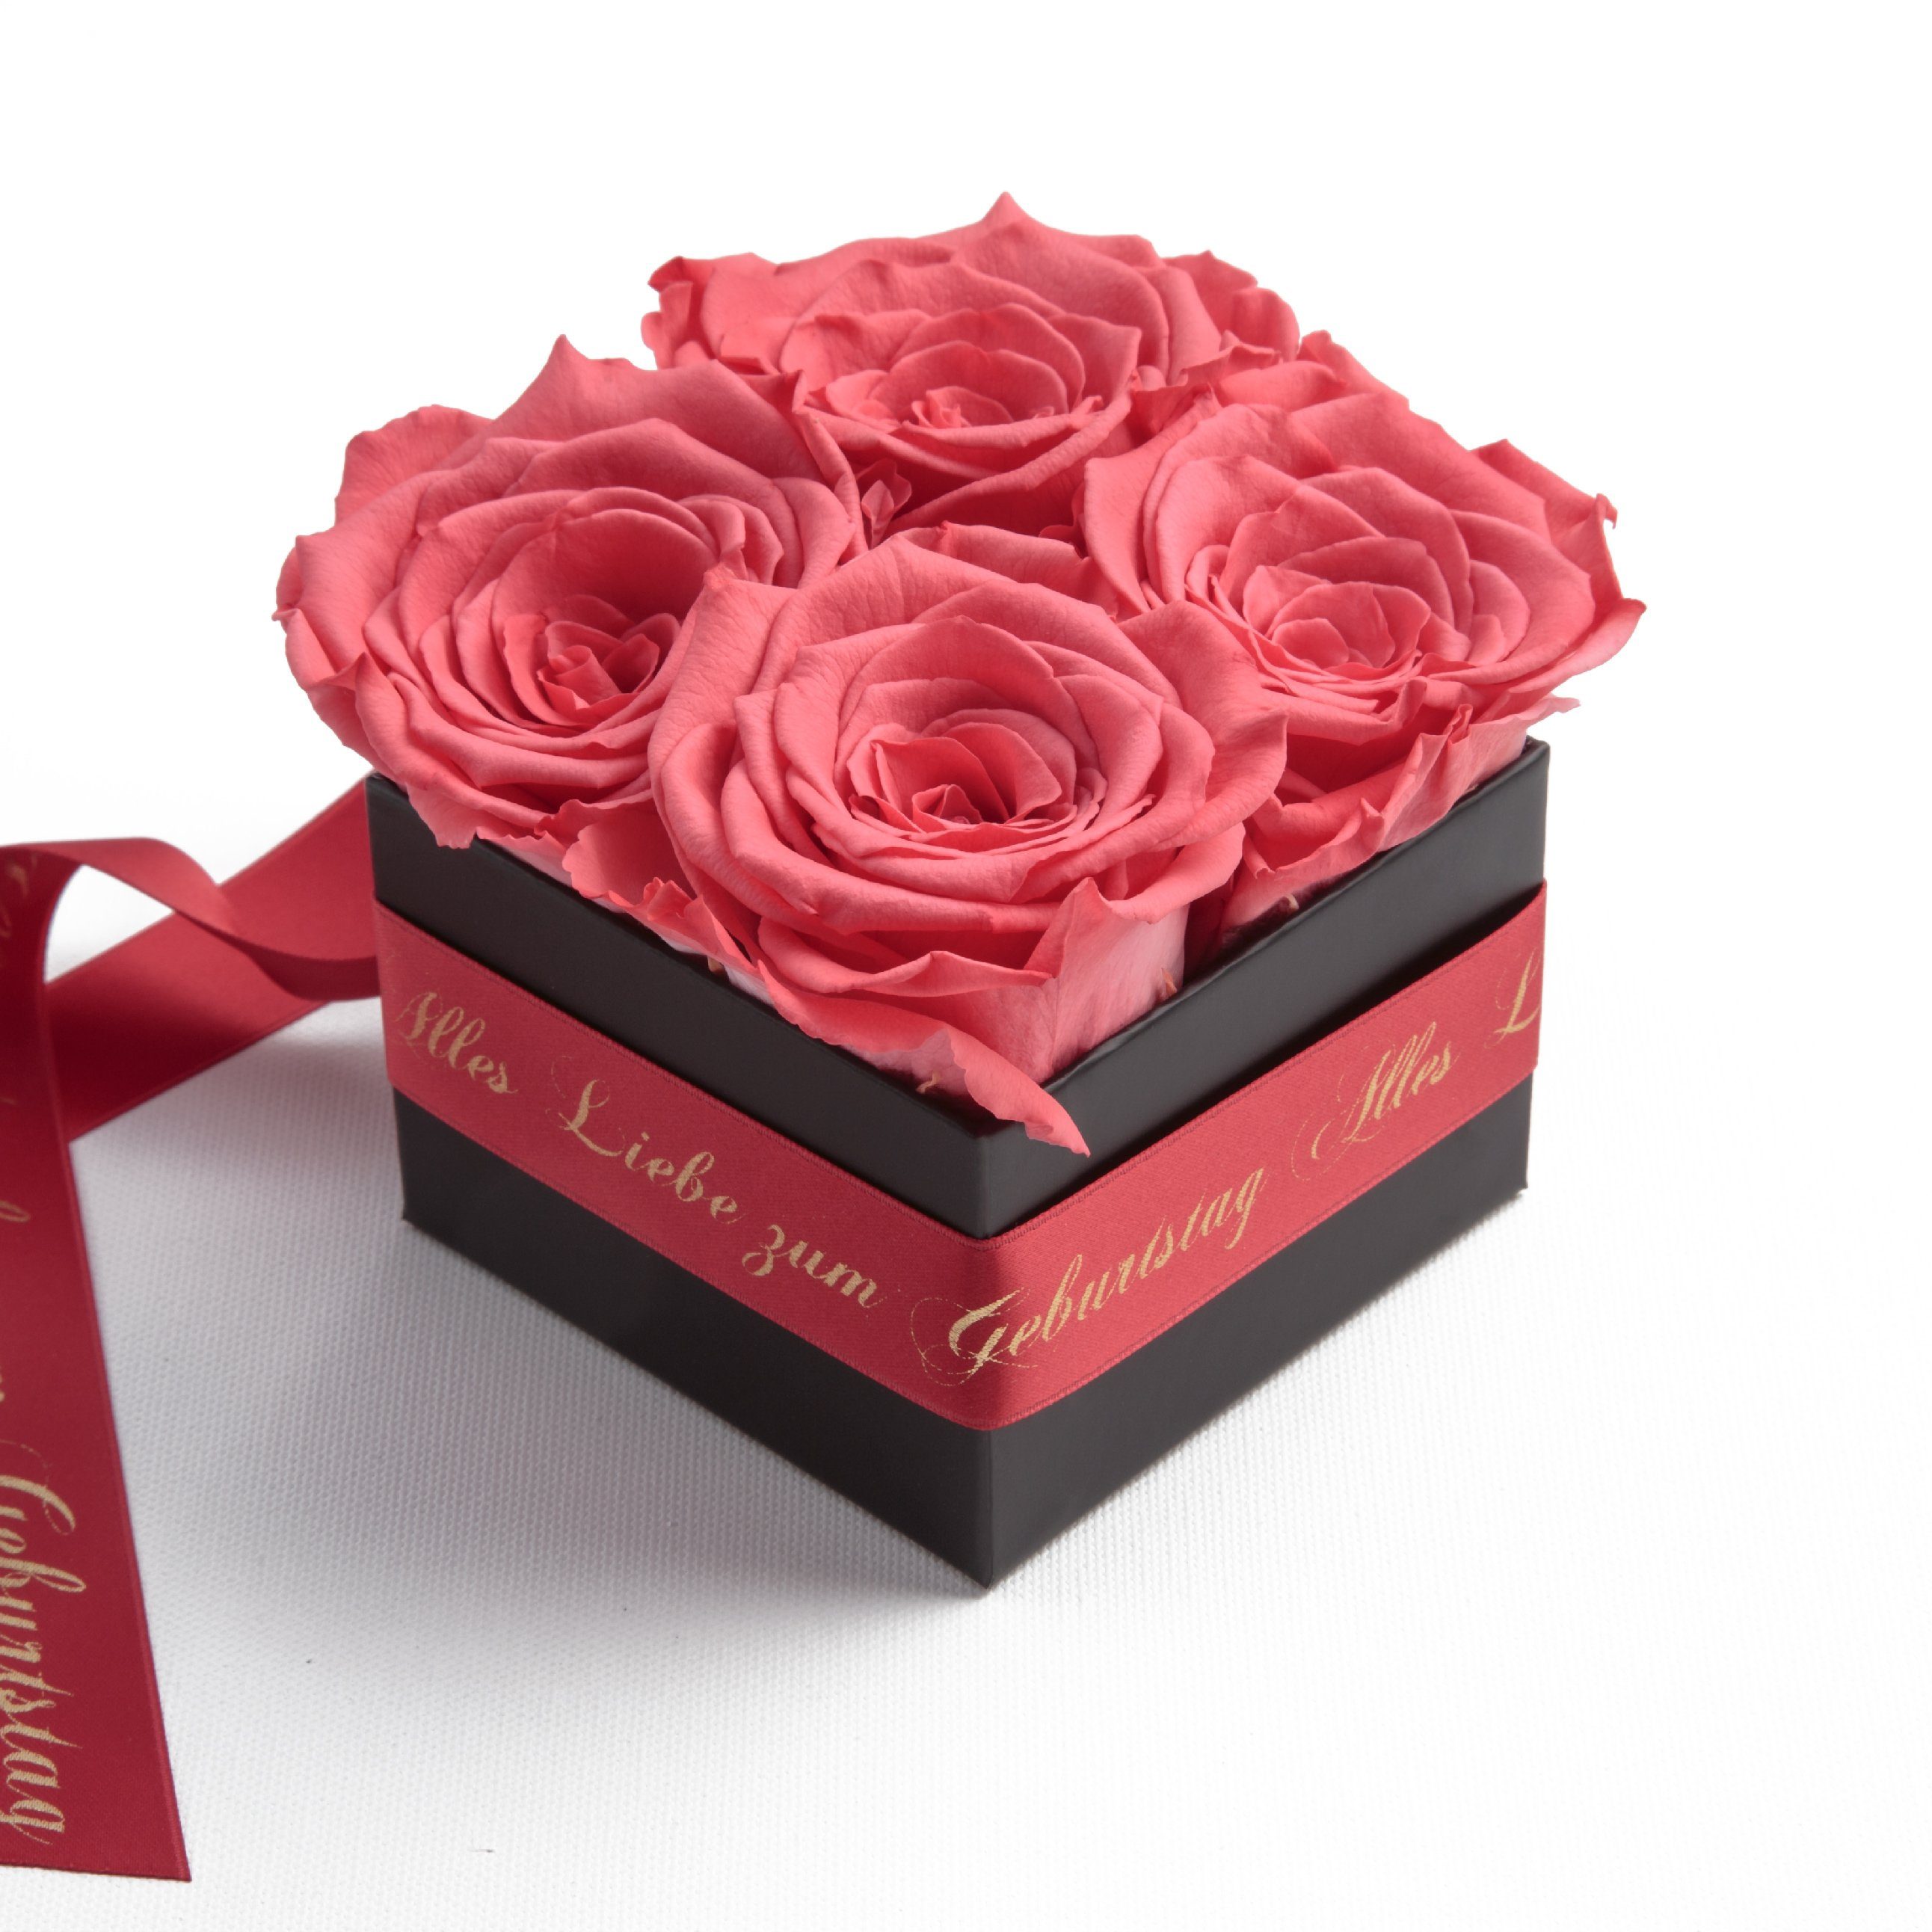 Korall Alles Dekoobjekt St), Rosen Geburtstag SCHULZ zum Frauen (1 Heidelberg echte Echte Rosen konservierte ROSEMARIE Rosenbox Liebe Geschenk für